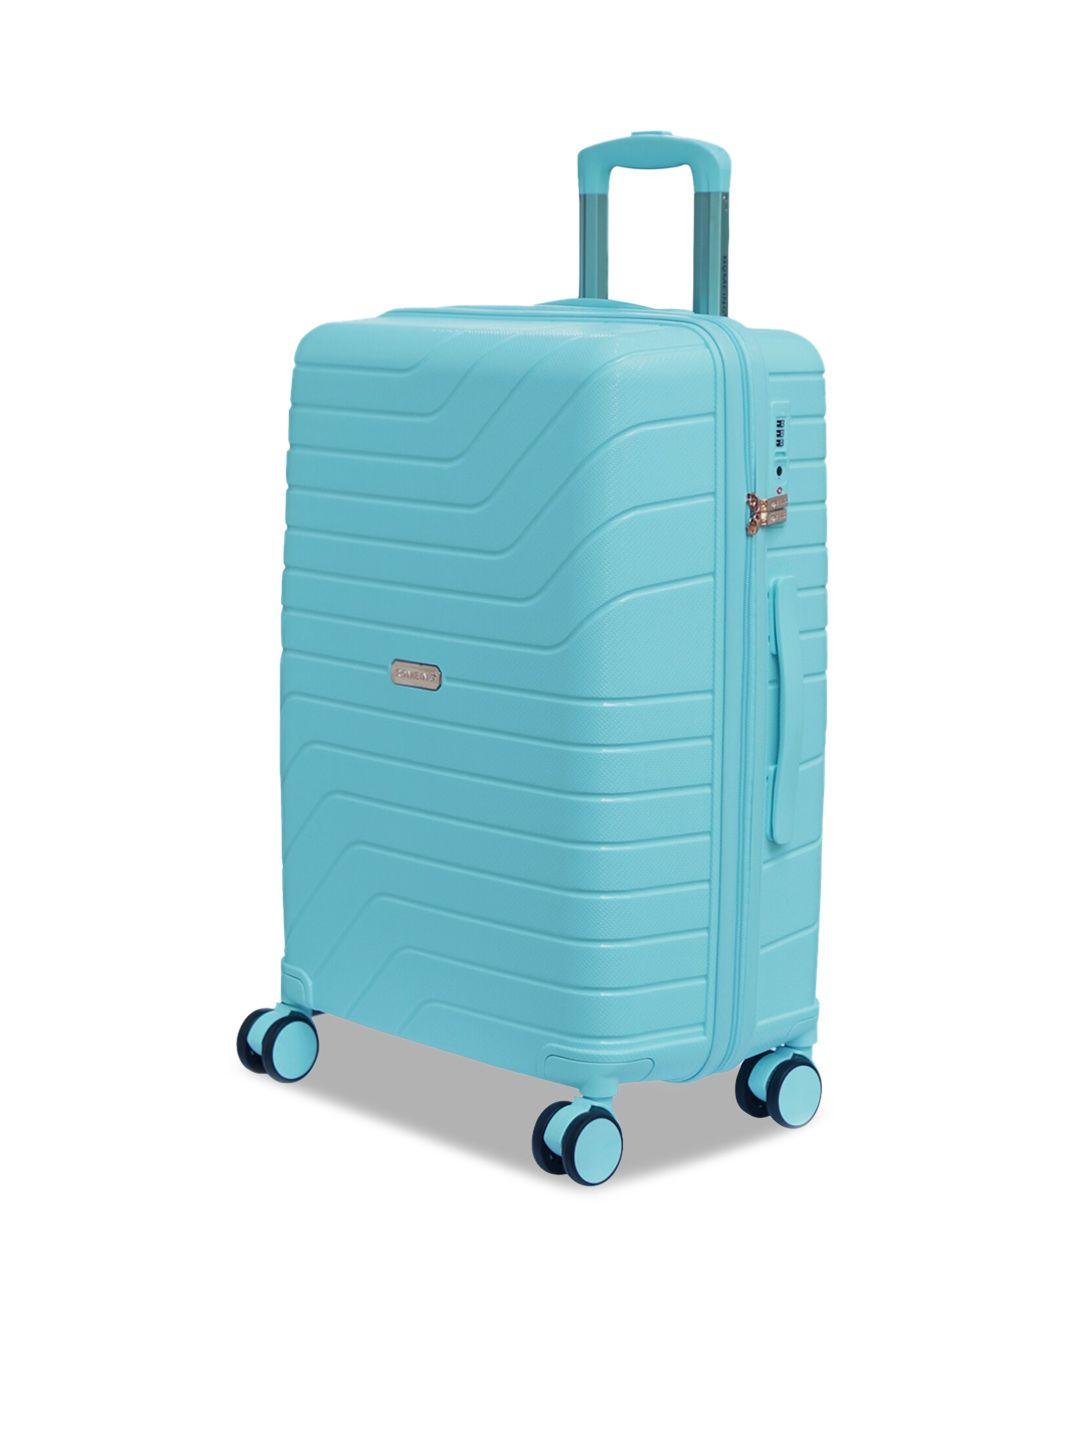 romeing tuscany turquoise blue hard-sided medium trolley suitcase